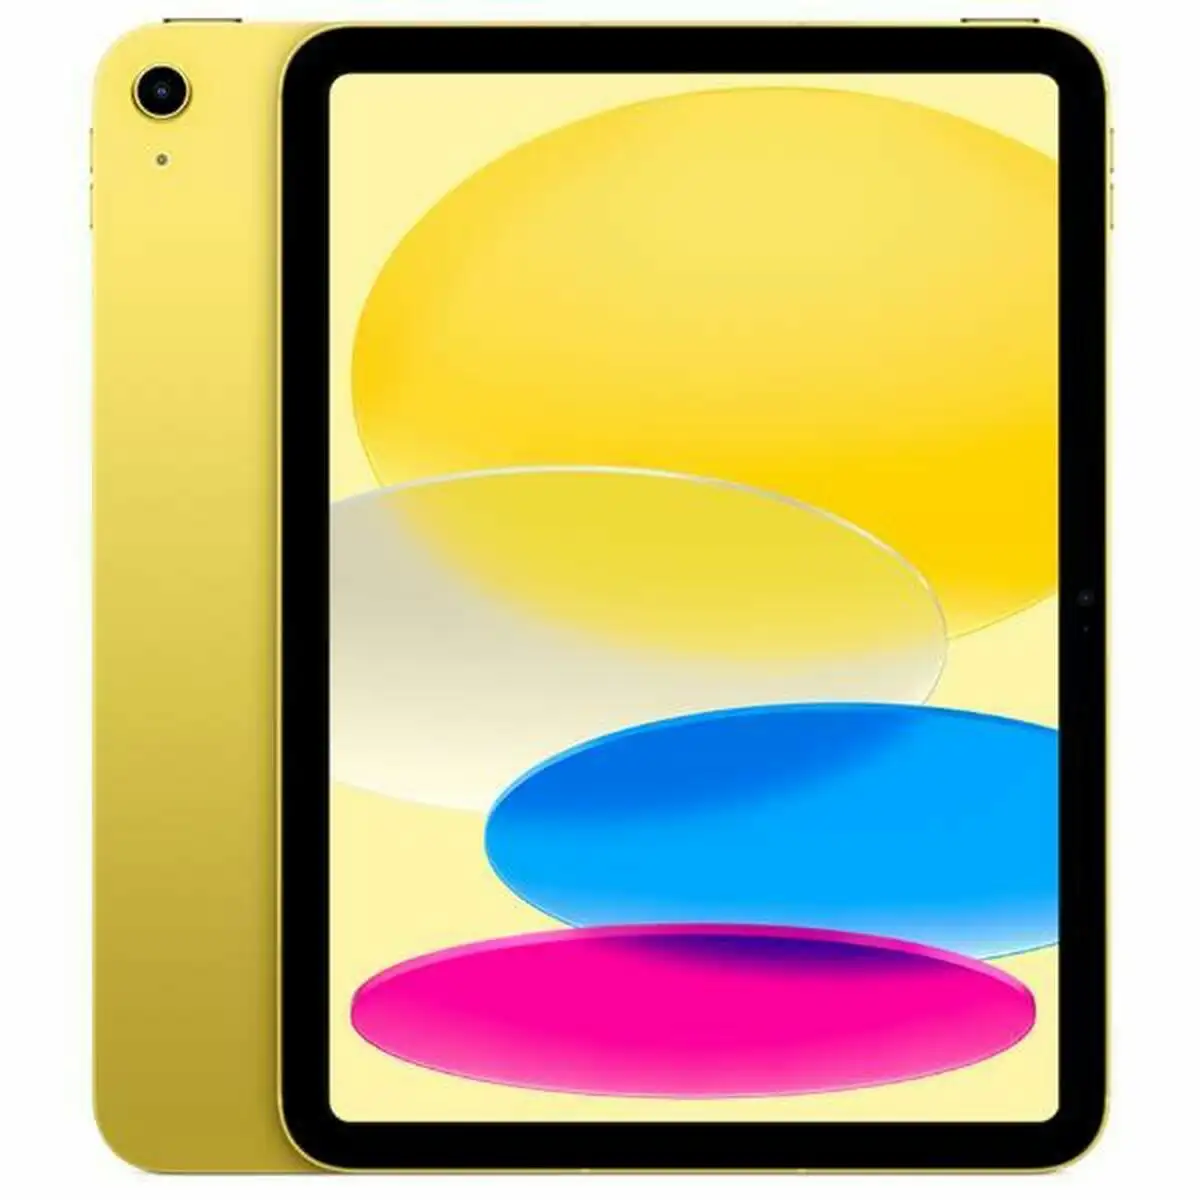 Tablette apple ipad 2022 jaune 256 gb_9308. Bienvenue chez DIAYTAR SENEGAL - Où Chaque Achat est un Geste d'Amour. Découvrez notre sélection minutieuse et choisissez des articles qui témoignent de votre passion.